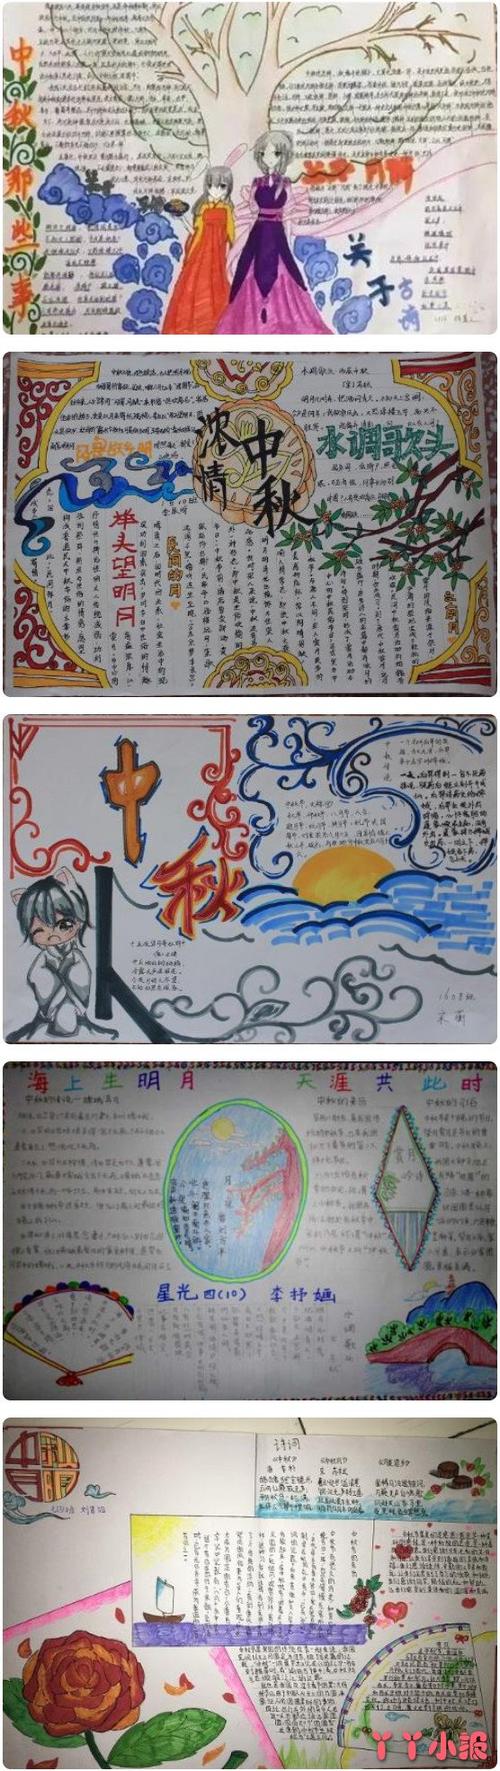 中秋节的手抄报模板图喜欢的小朋友们可以简单的参考一些我们的手